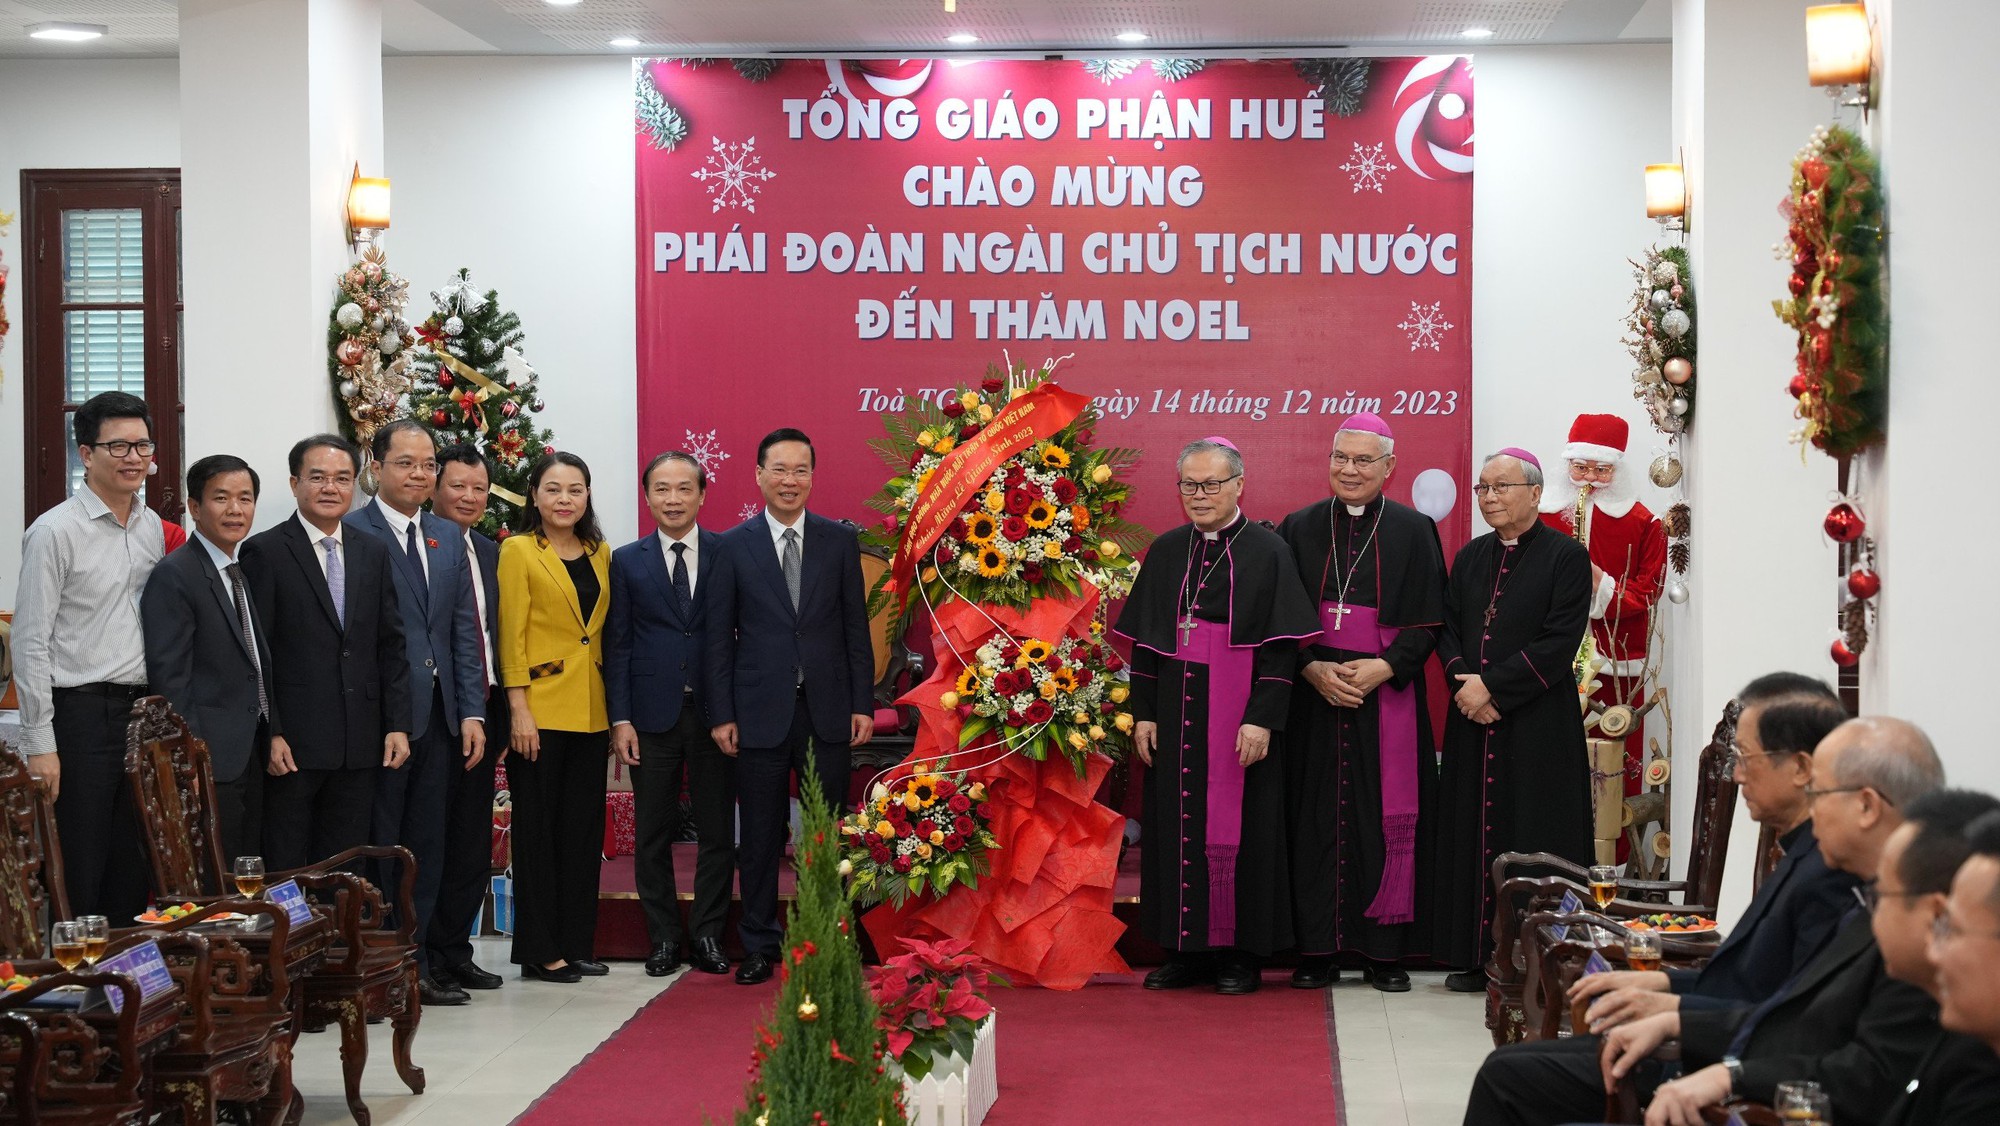 Chủ tịch nước Võ Văn Thưởng chúc mừng Giáng sinh Tổng Giáo phận Huế- Ảnh 2.